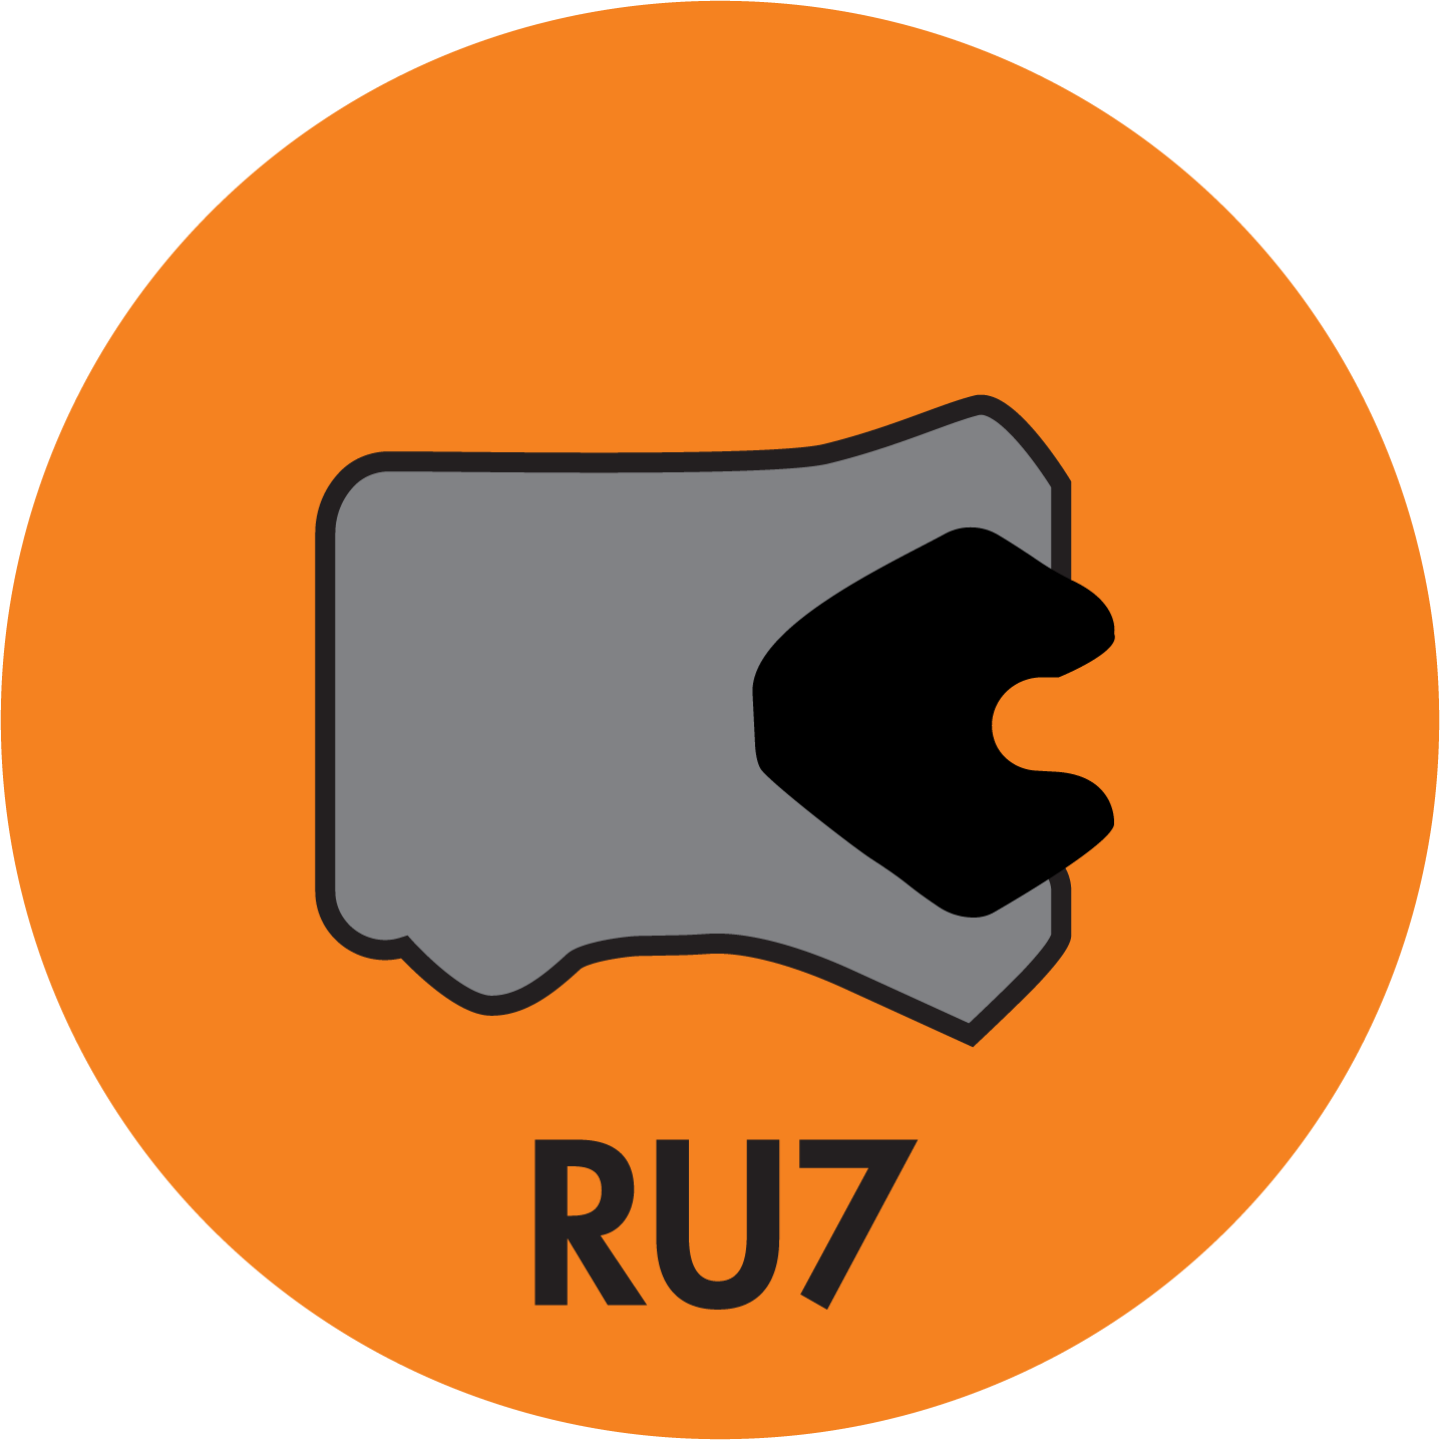 RU7 TWIN LIP ROD (LOADED) U-CUP (AU+NBR) - RU7-25002500-375-P92E Image 1